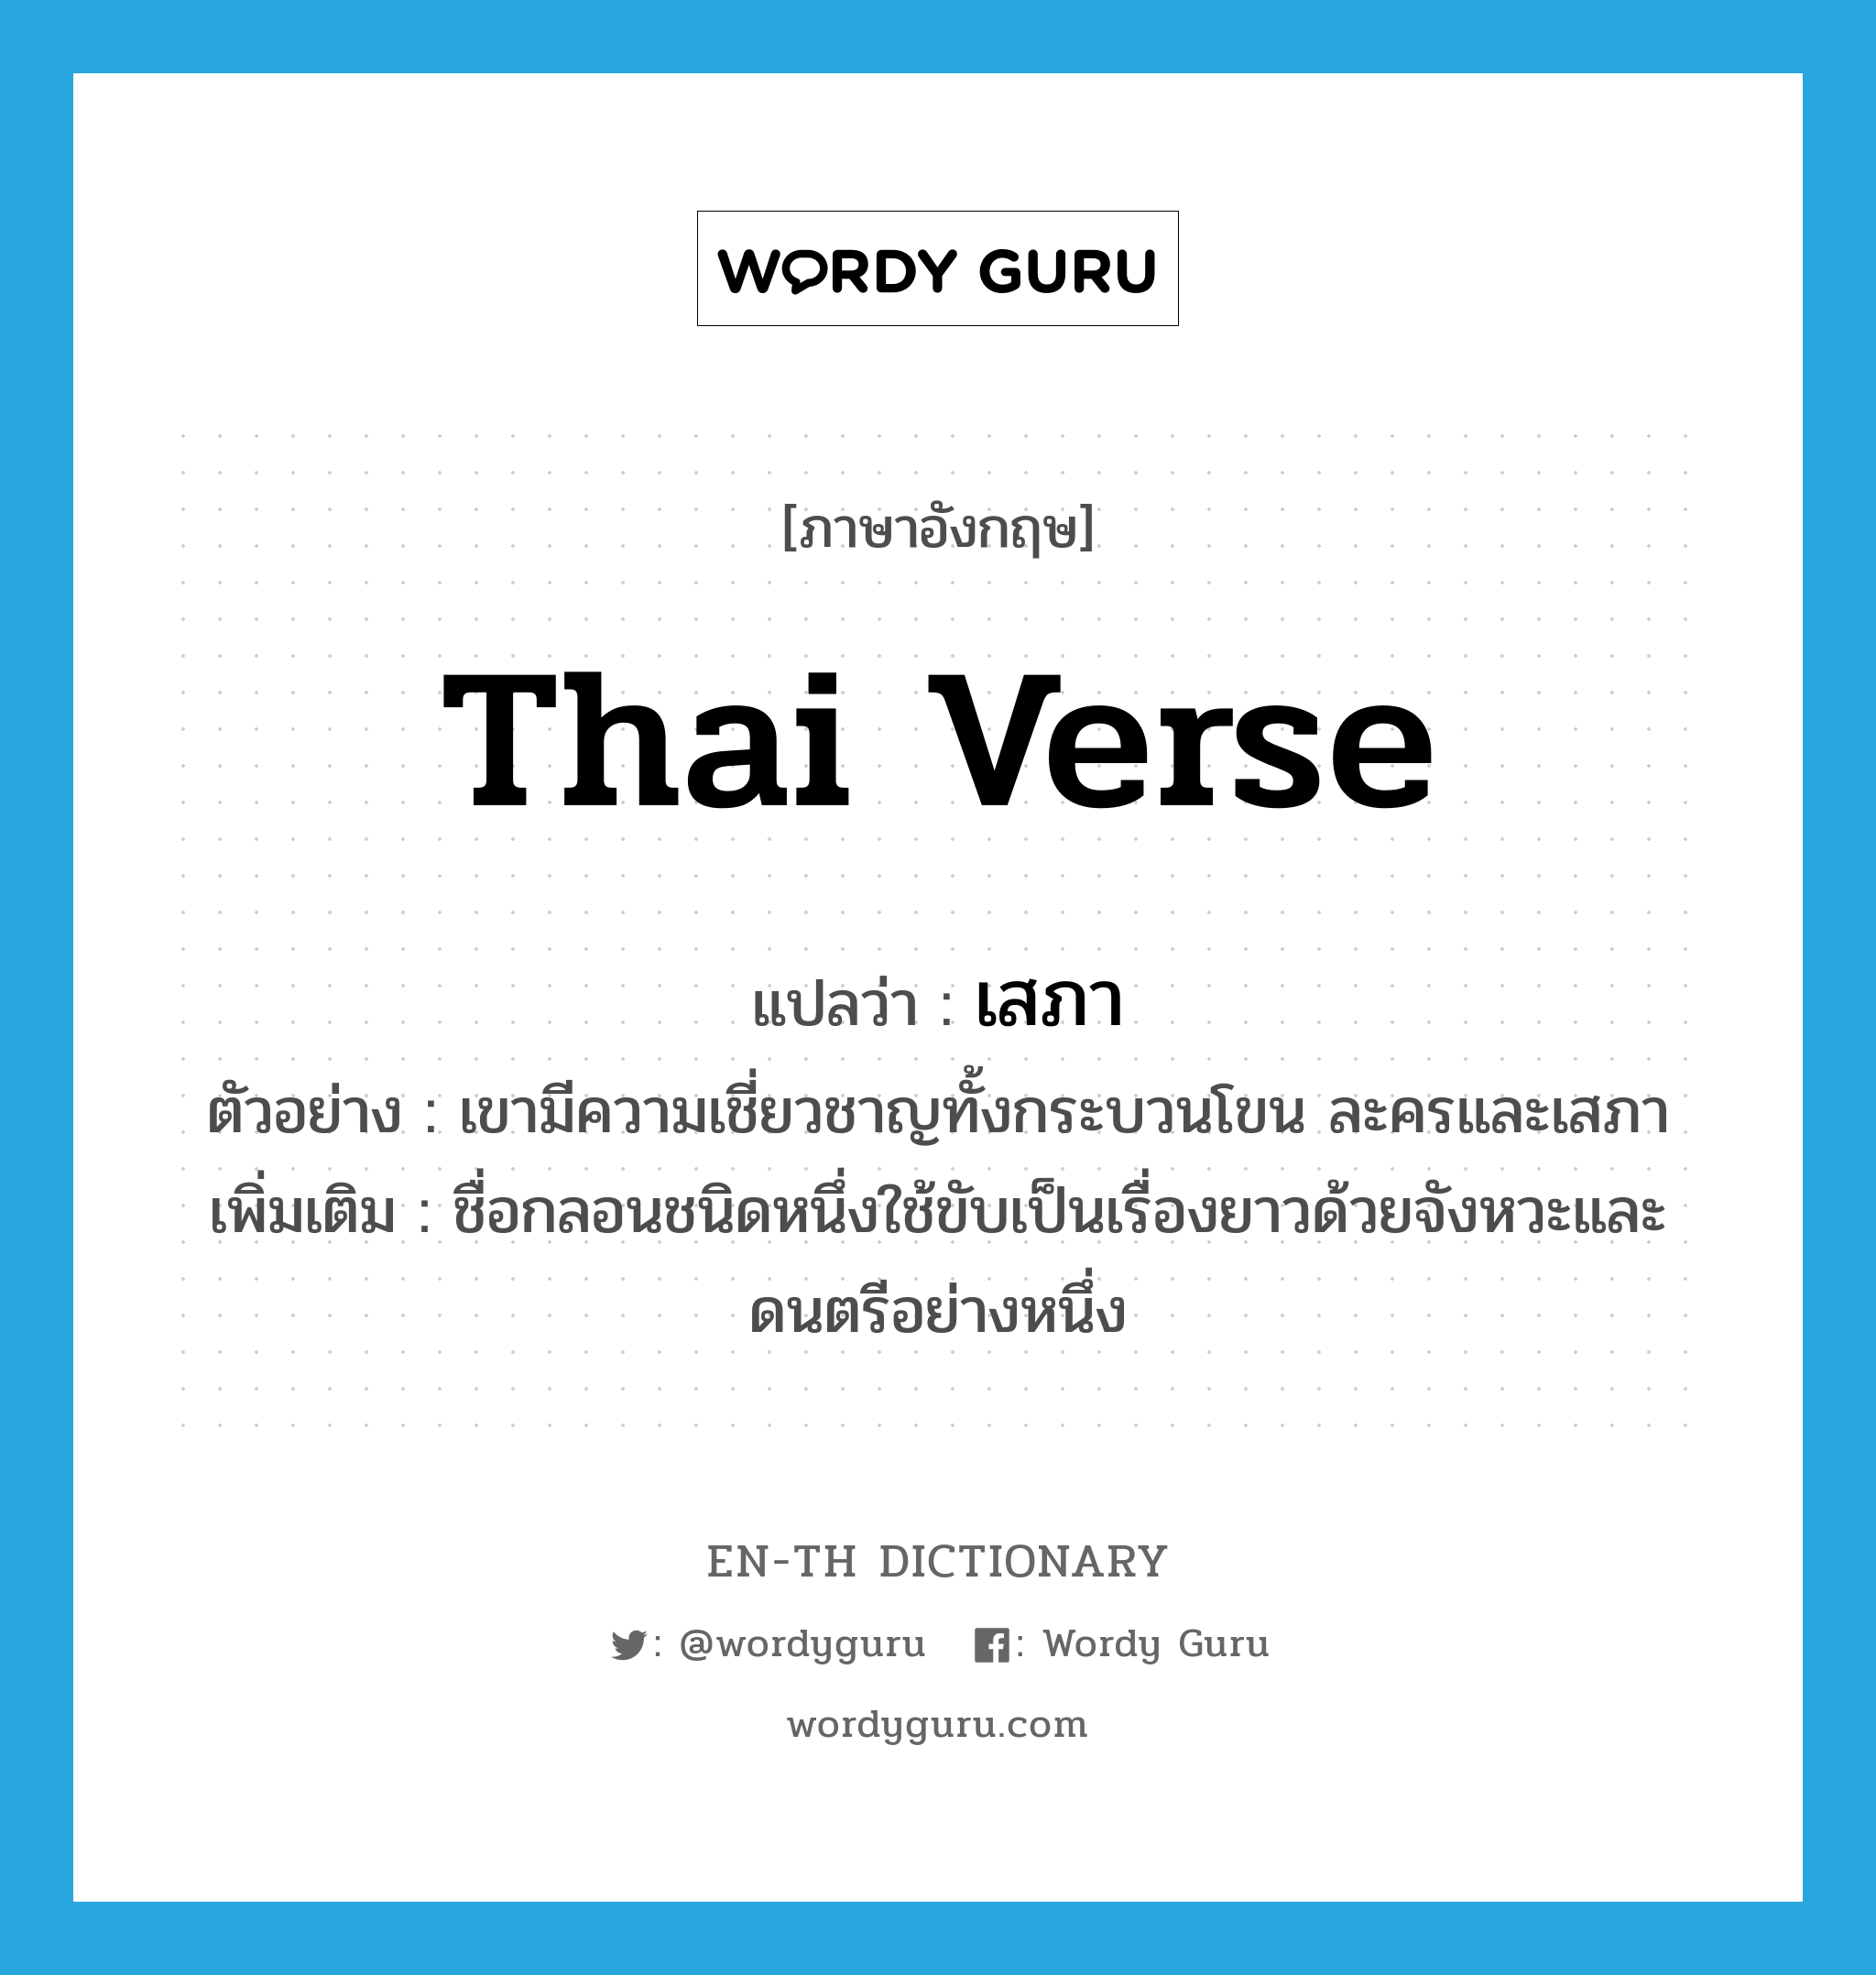 Thai verse แปลว่า?, คำศัพท์ภาษาอังกฤษ Thai verse แปลว่า เสภา ประเภท N ตัวอย่าง เขามีความเชี่ยวชาญทั้งกระบวนโขน ละครและเสภา เพิ่มเติม ชื่อกลอนชนิดหนึ่งใช้ขับเป็นเรื่องยาวด้วยจังหวะและดนตรีอย่างหนึ่ง หมวด N